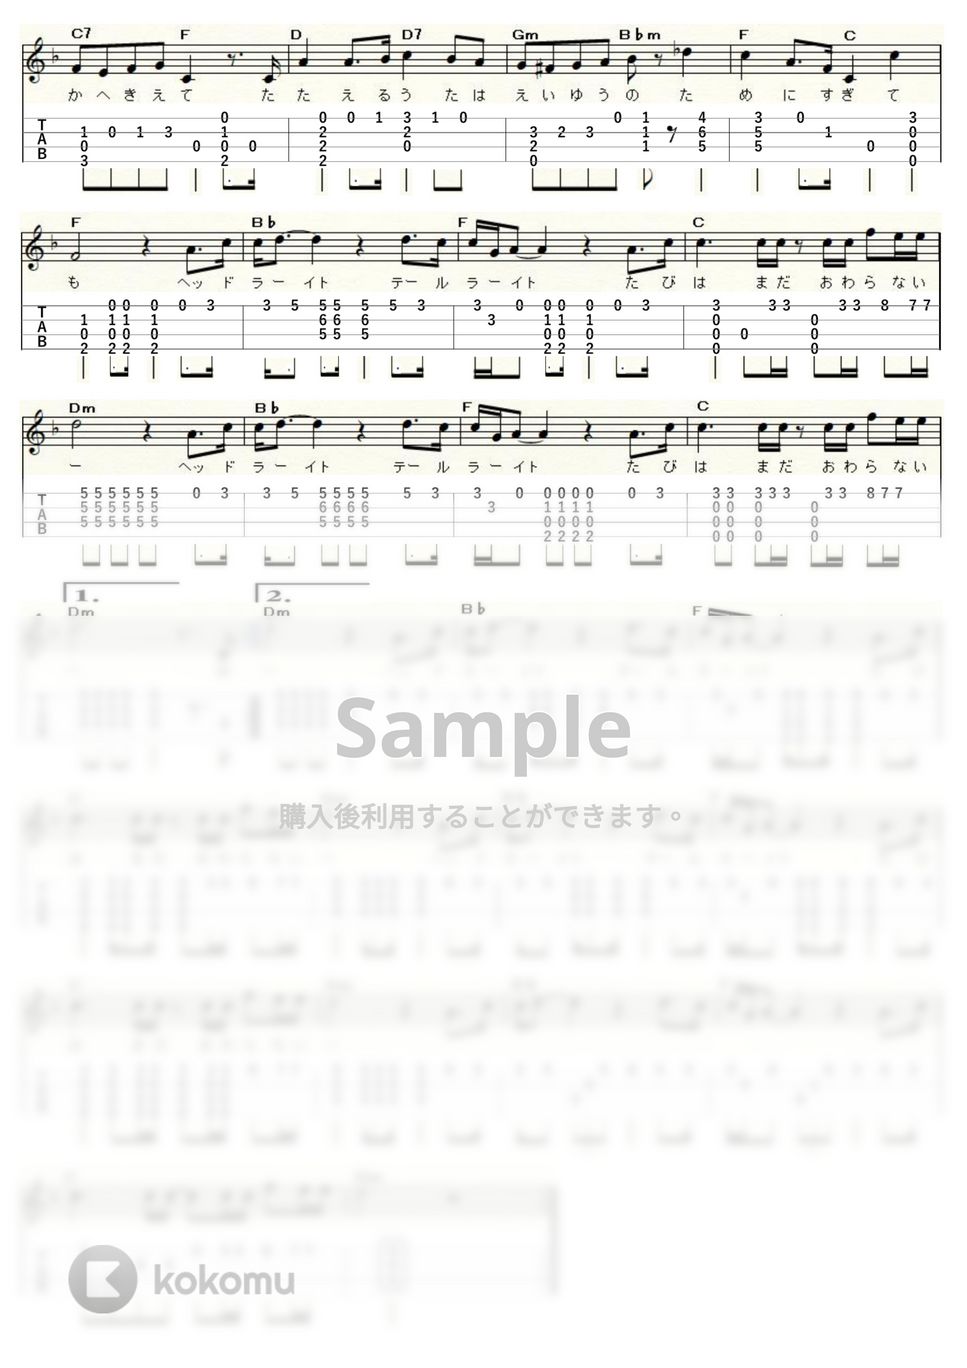 中島みゆき - ヘッドライト・テールライト (ｳｸﾚﾚｿﾛ / High-G,Low-G / 中級) by ukulelepapa